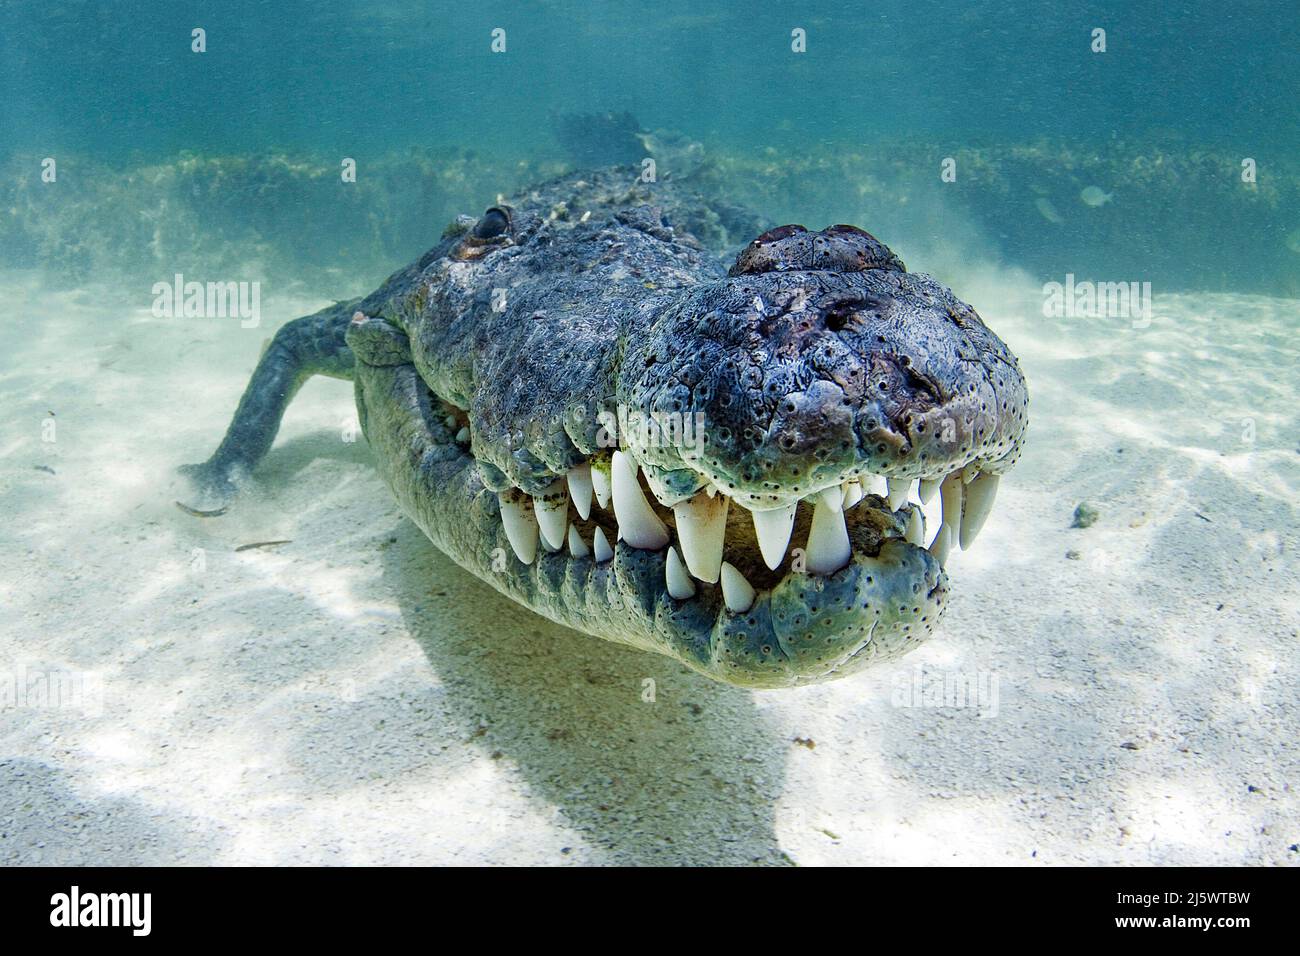 Cocodrilo americano (Crocodylus acutus), Banco Chinchorro, Quintana Roo, México, América Foto de stock